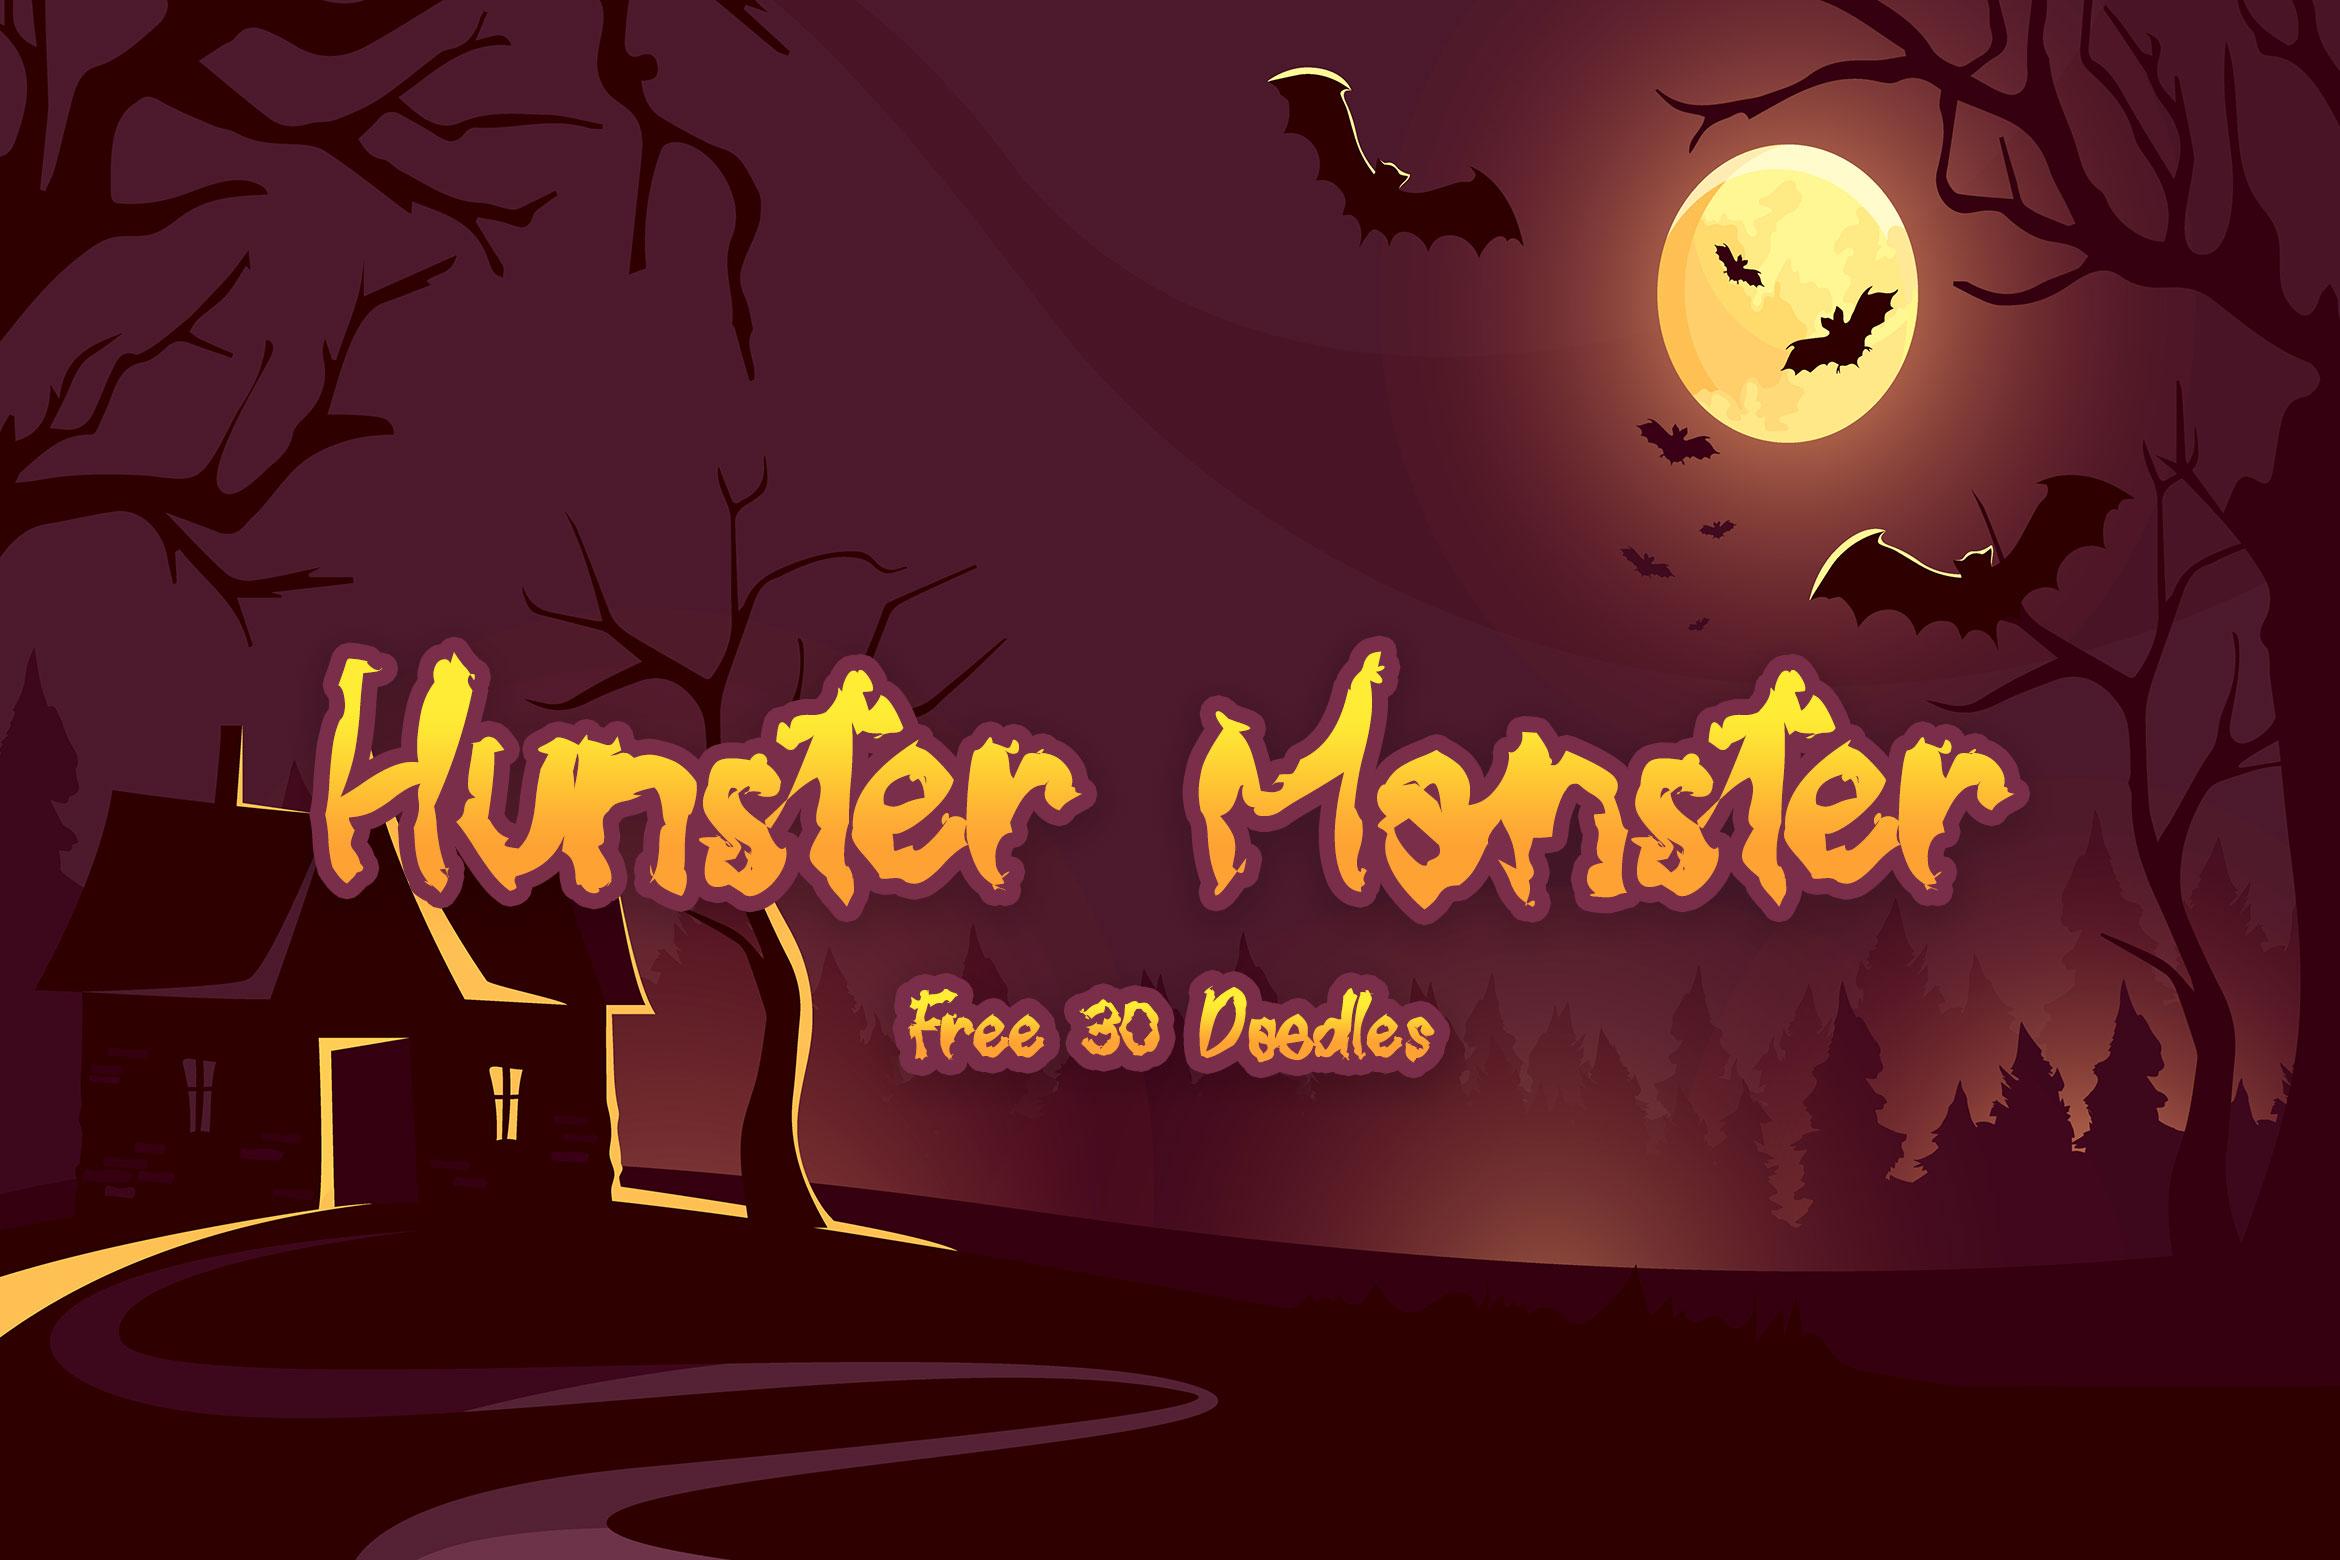 Hunster Monster Font